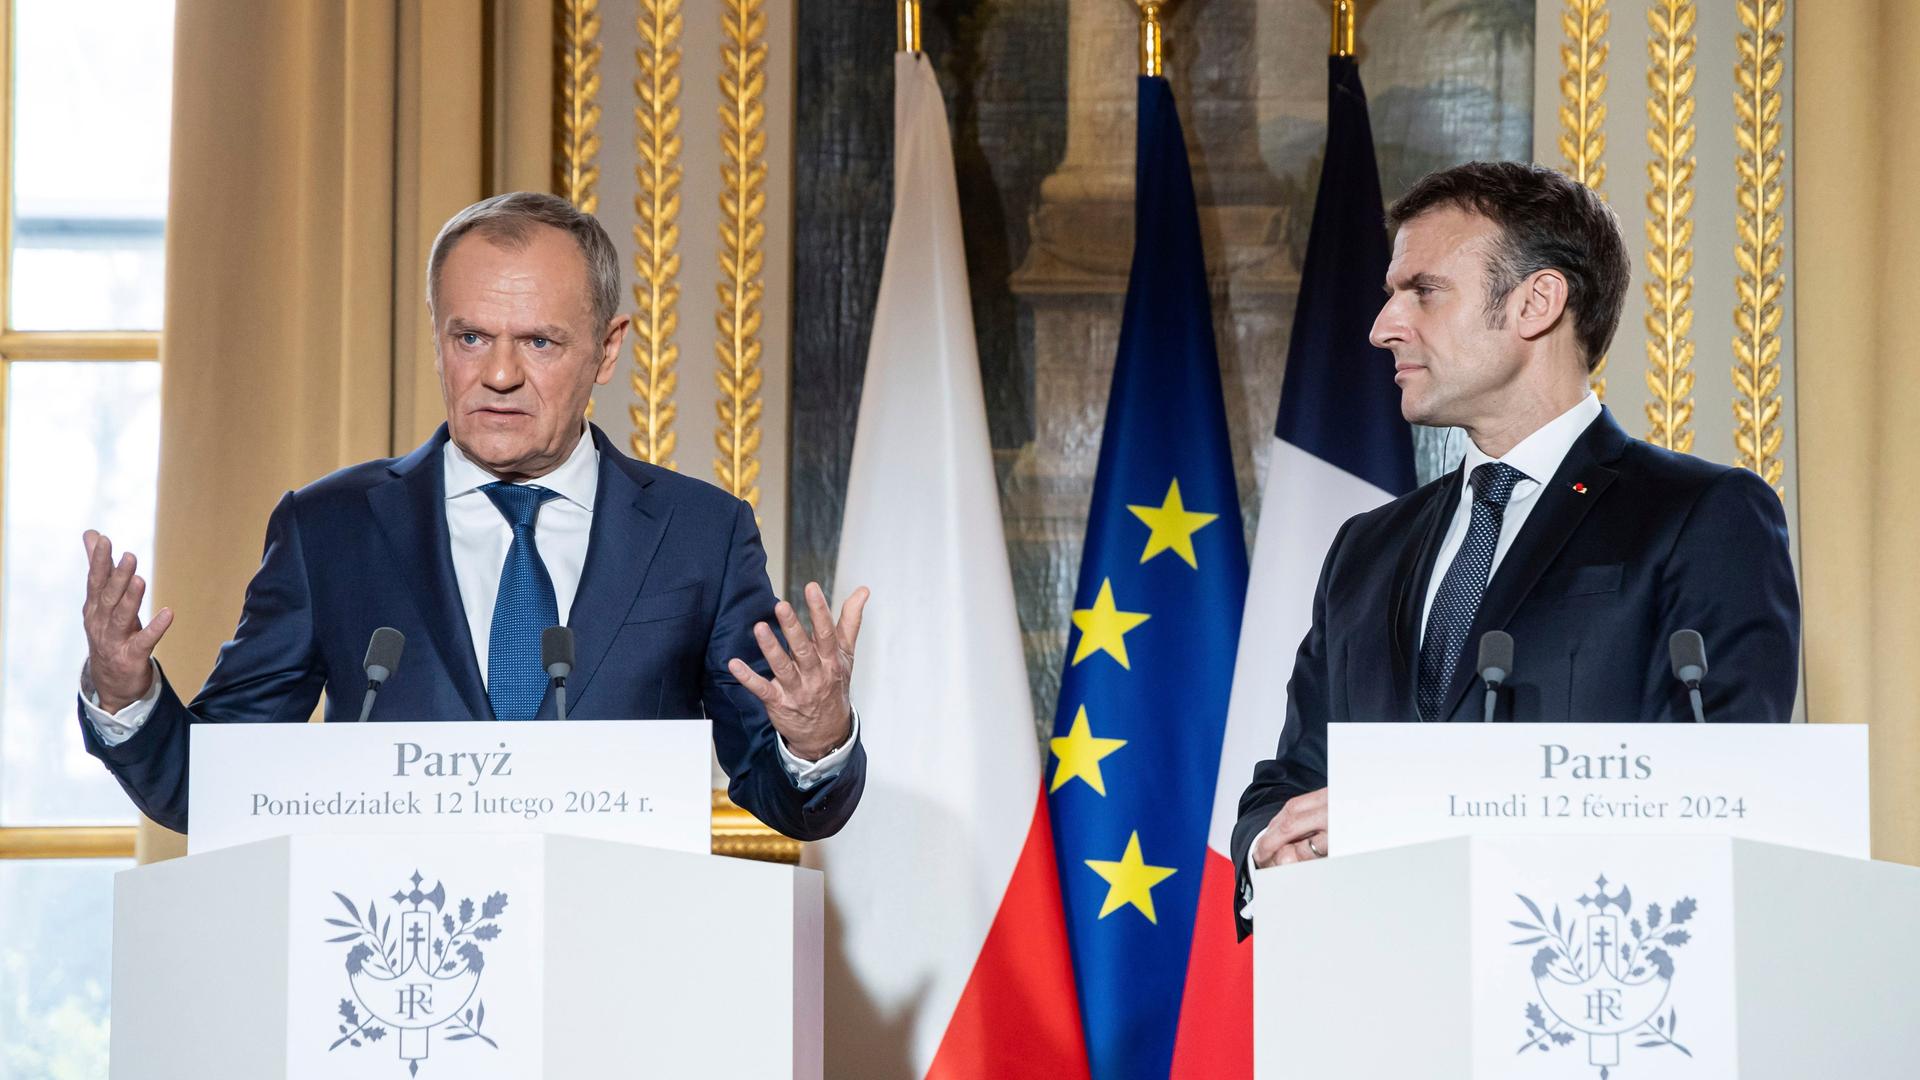 Frankreich, Paris: Emmanuel Macron (r), Präsident von Frankreich, und Donald Tusk, Ministerpräsident von Polen, geben im Rahmen ihres Treffens im Elysee-Palast eine Erklärung ab.